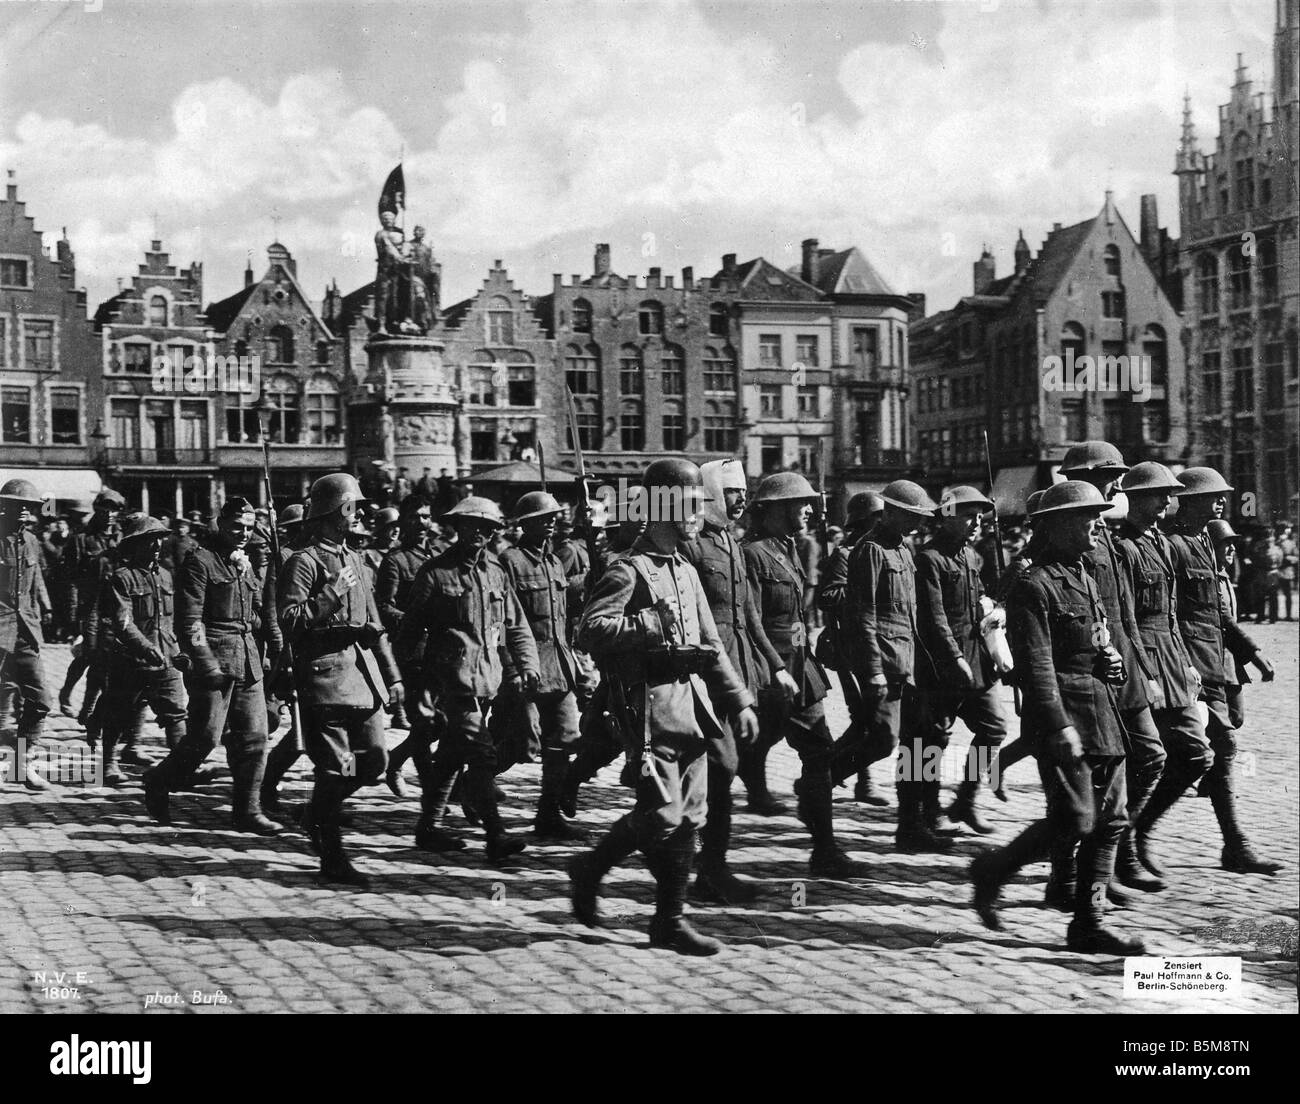 2 g55 K1 1917 8 E English POWs Bruges WWI storia prima guerra mondiale i prigionieri di guerra il successo della nostra fanteria di marina sull'Yser che conduce lontano Foto Stock